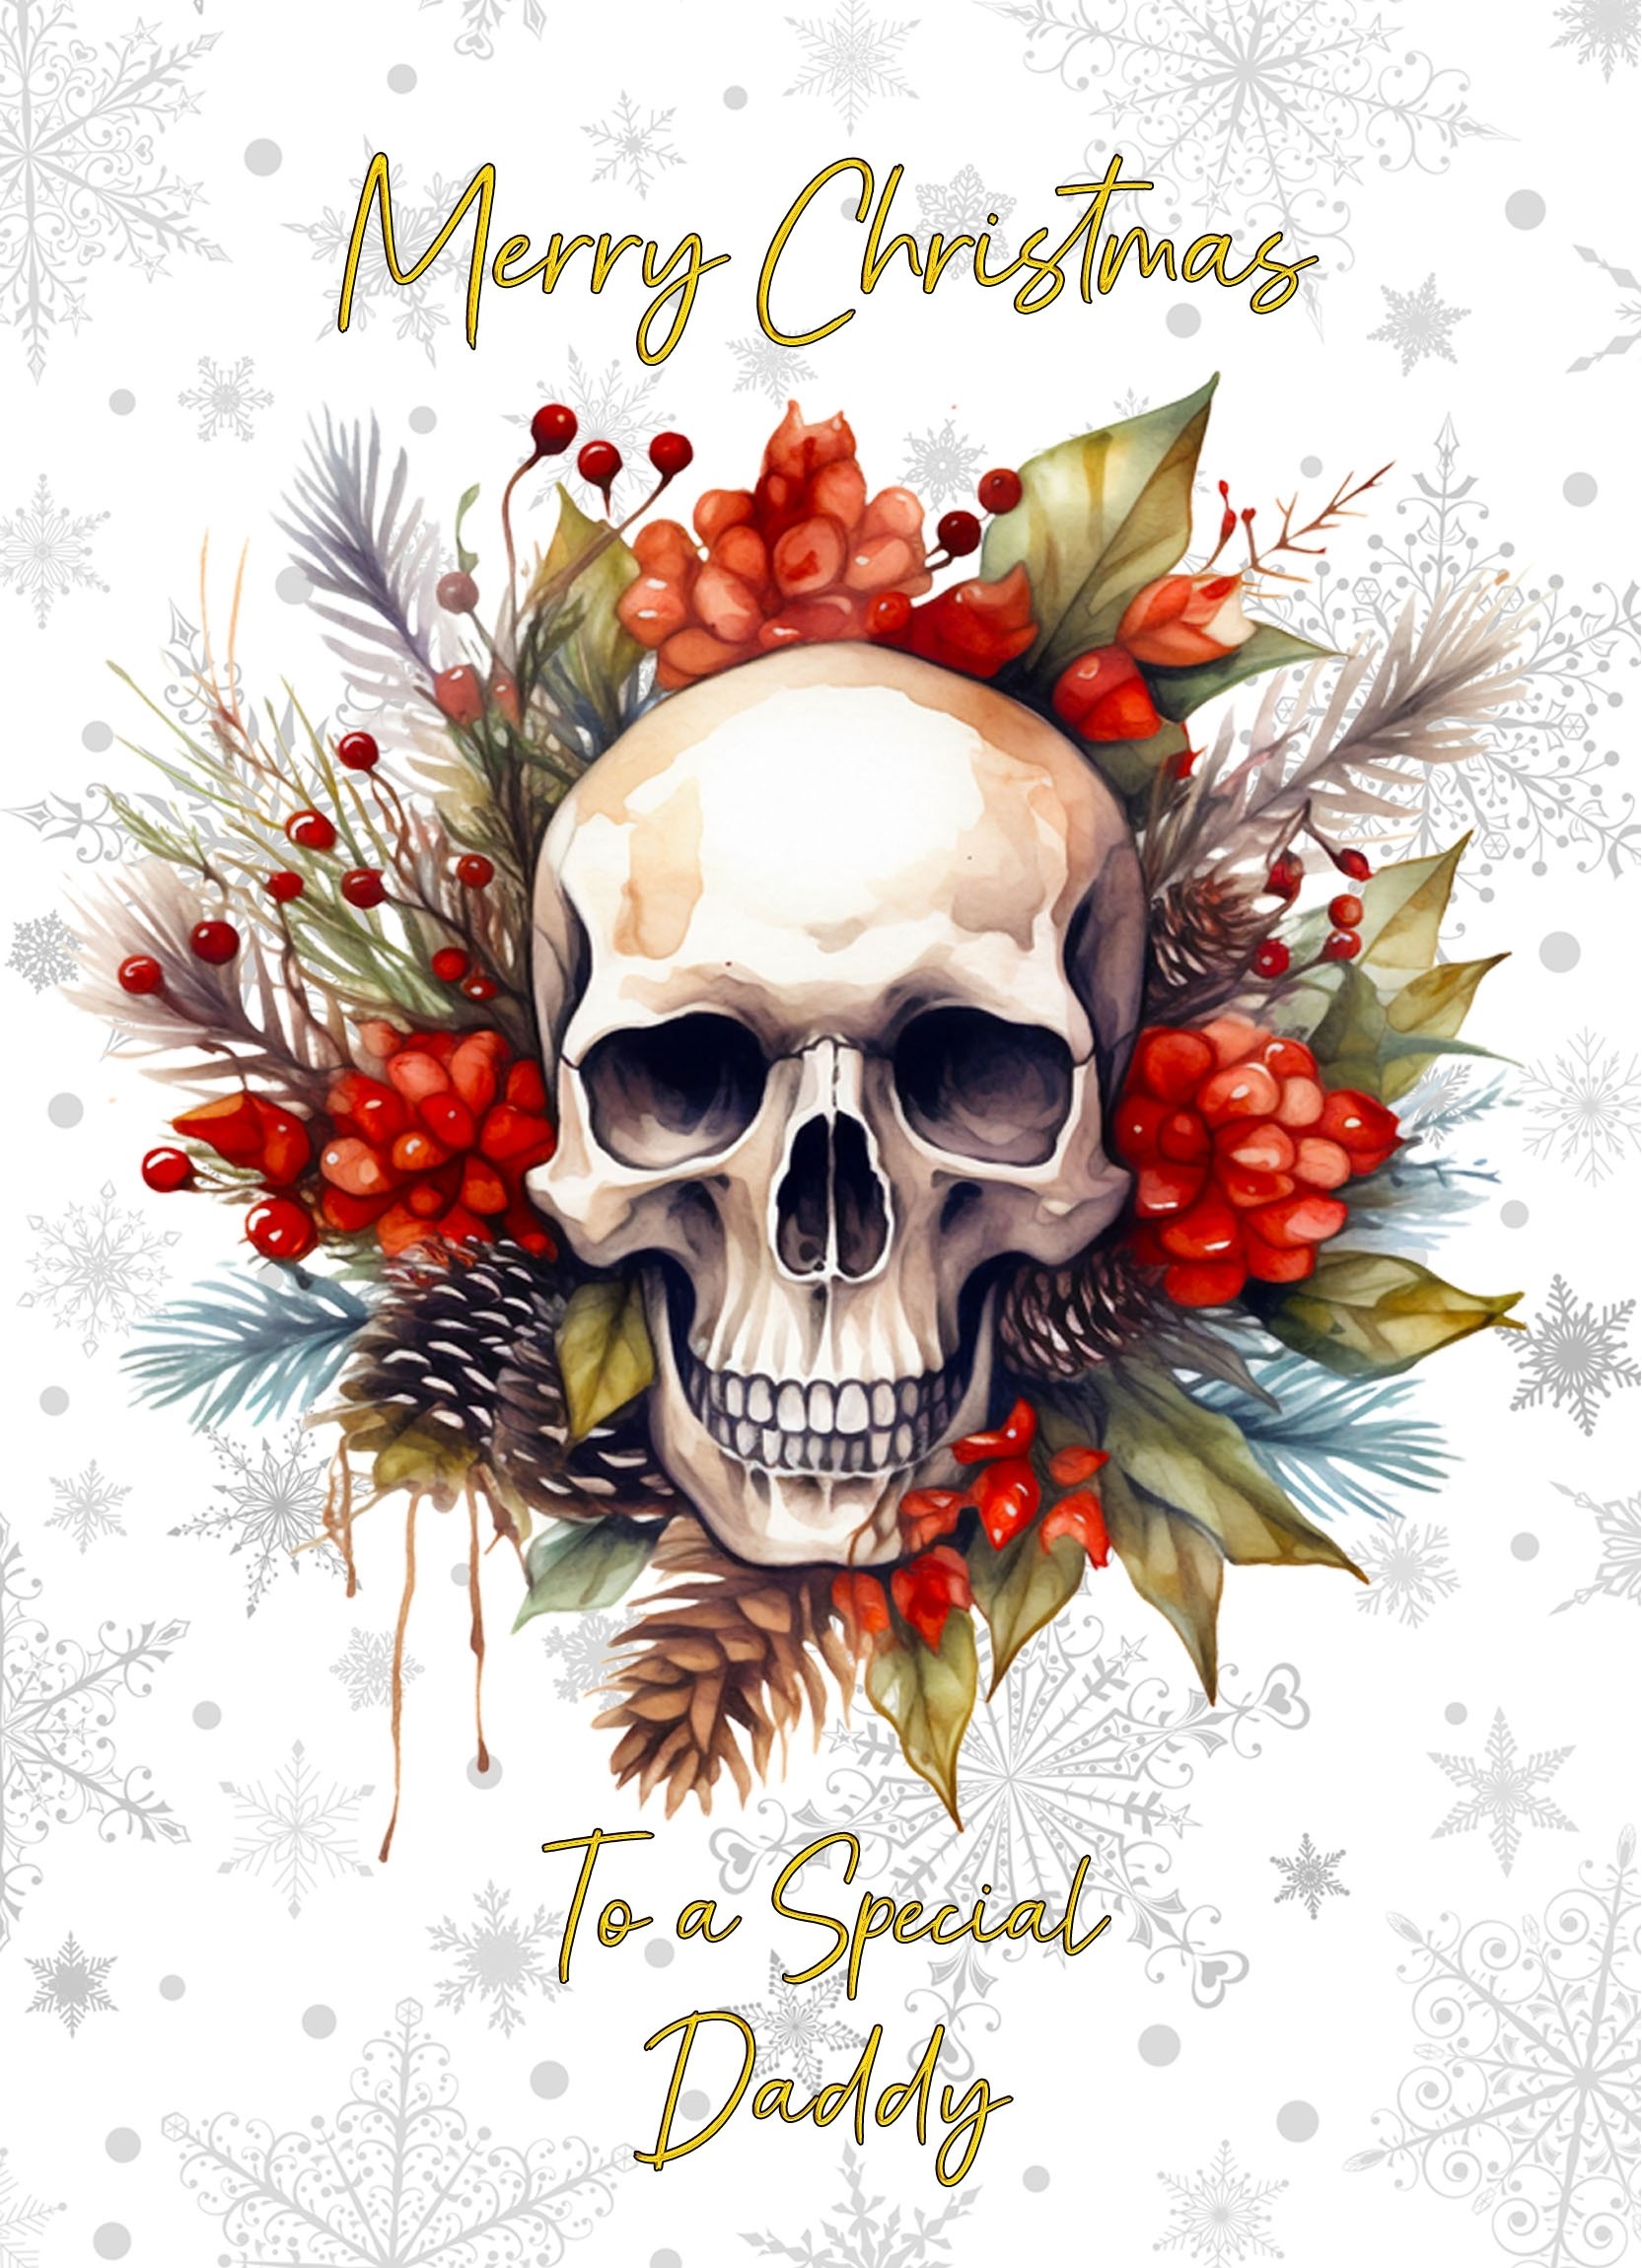 Christmas Card For Daddy (Gothic Fantasy Skull Wreath)